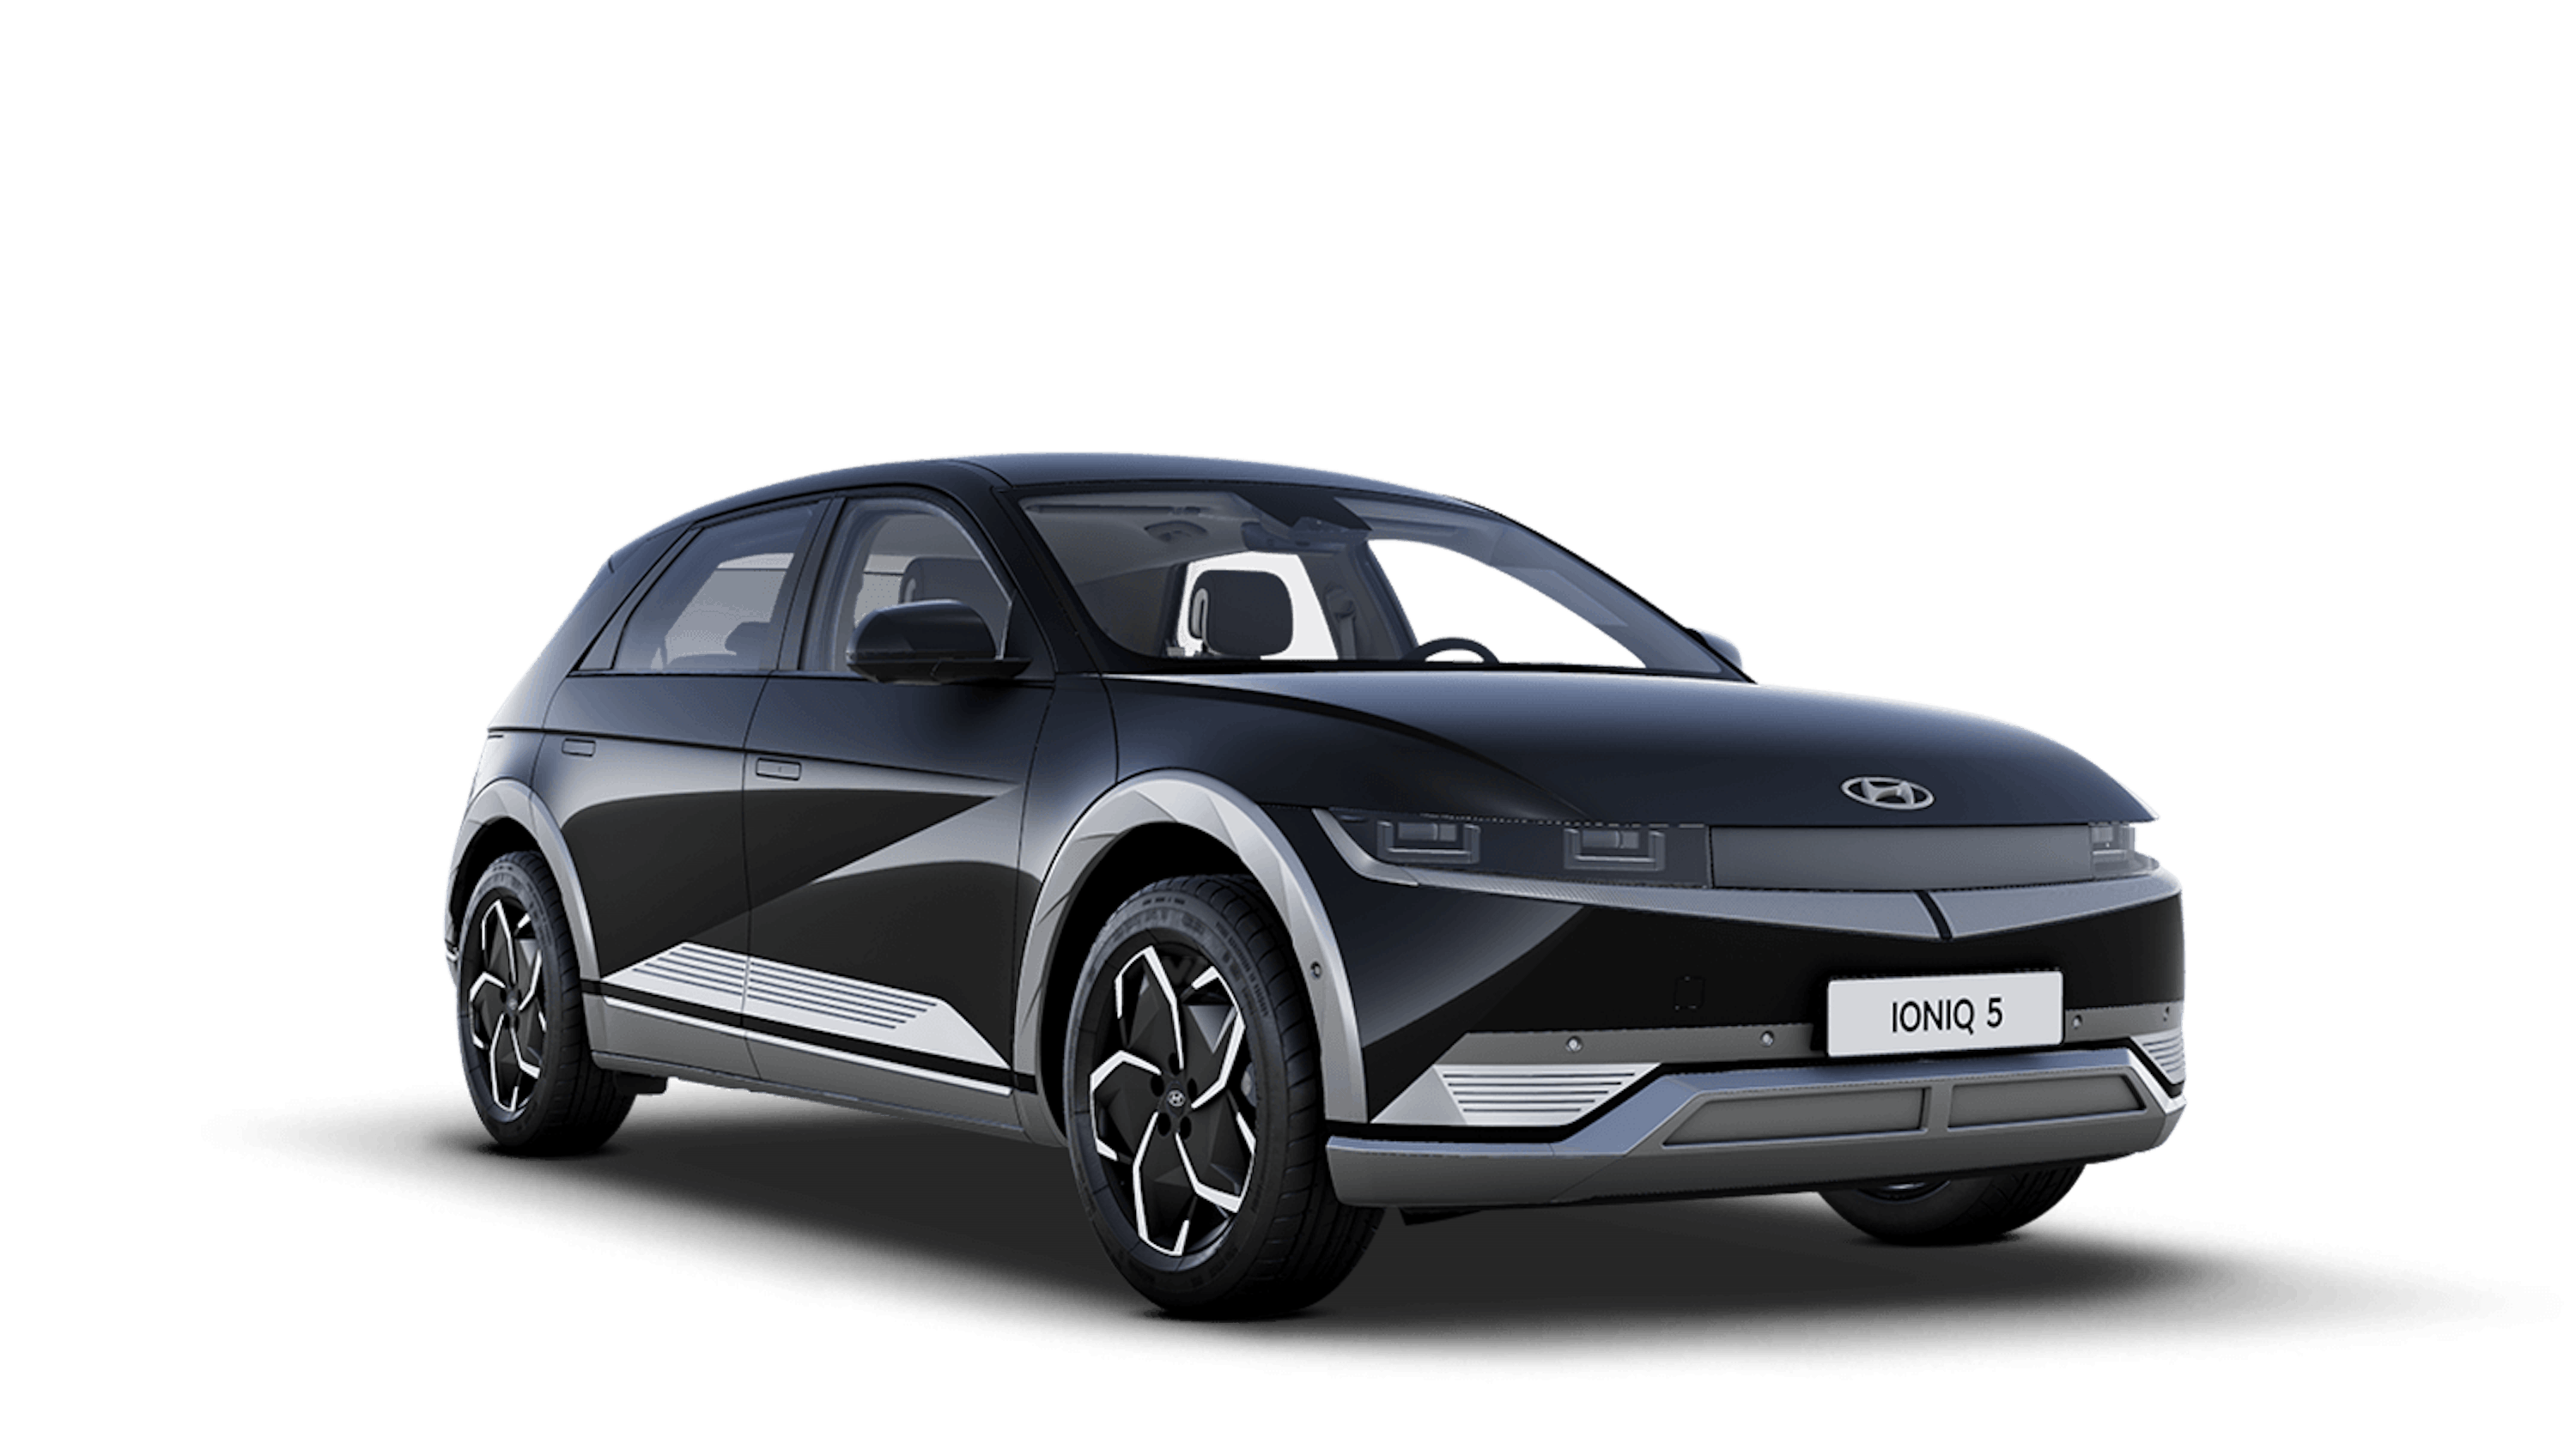 Electric & Hybrid explained with Toomey Hyundai